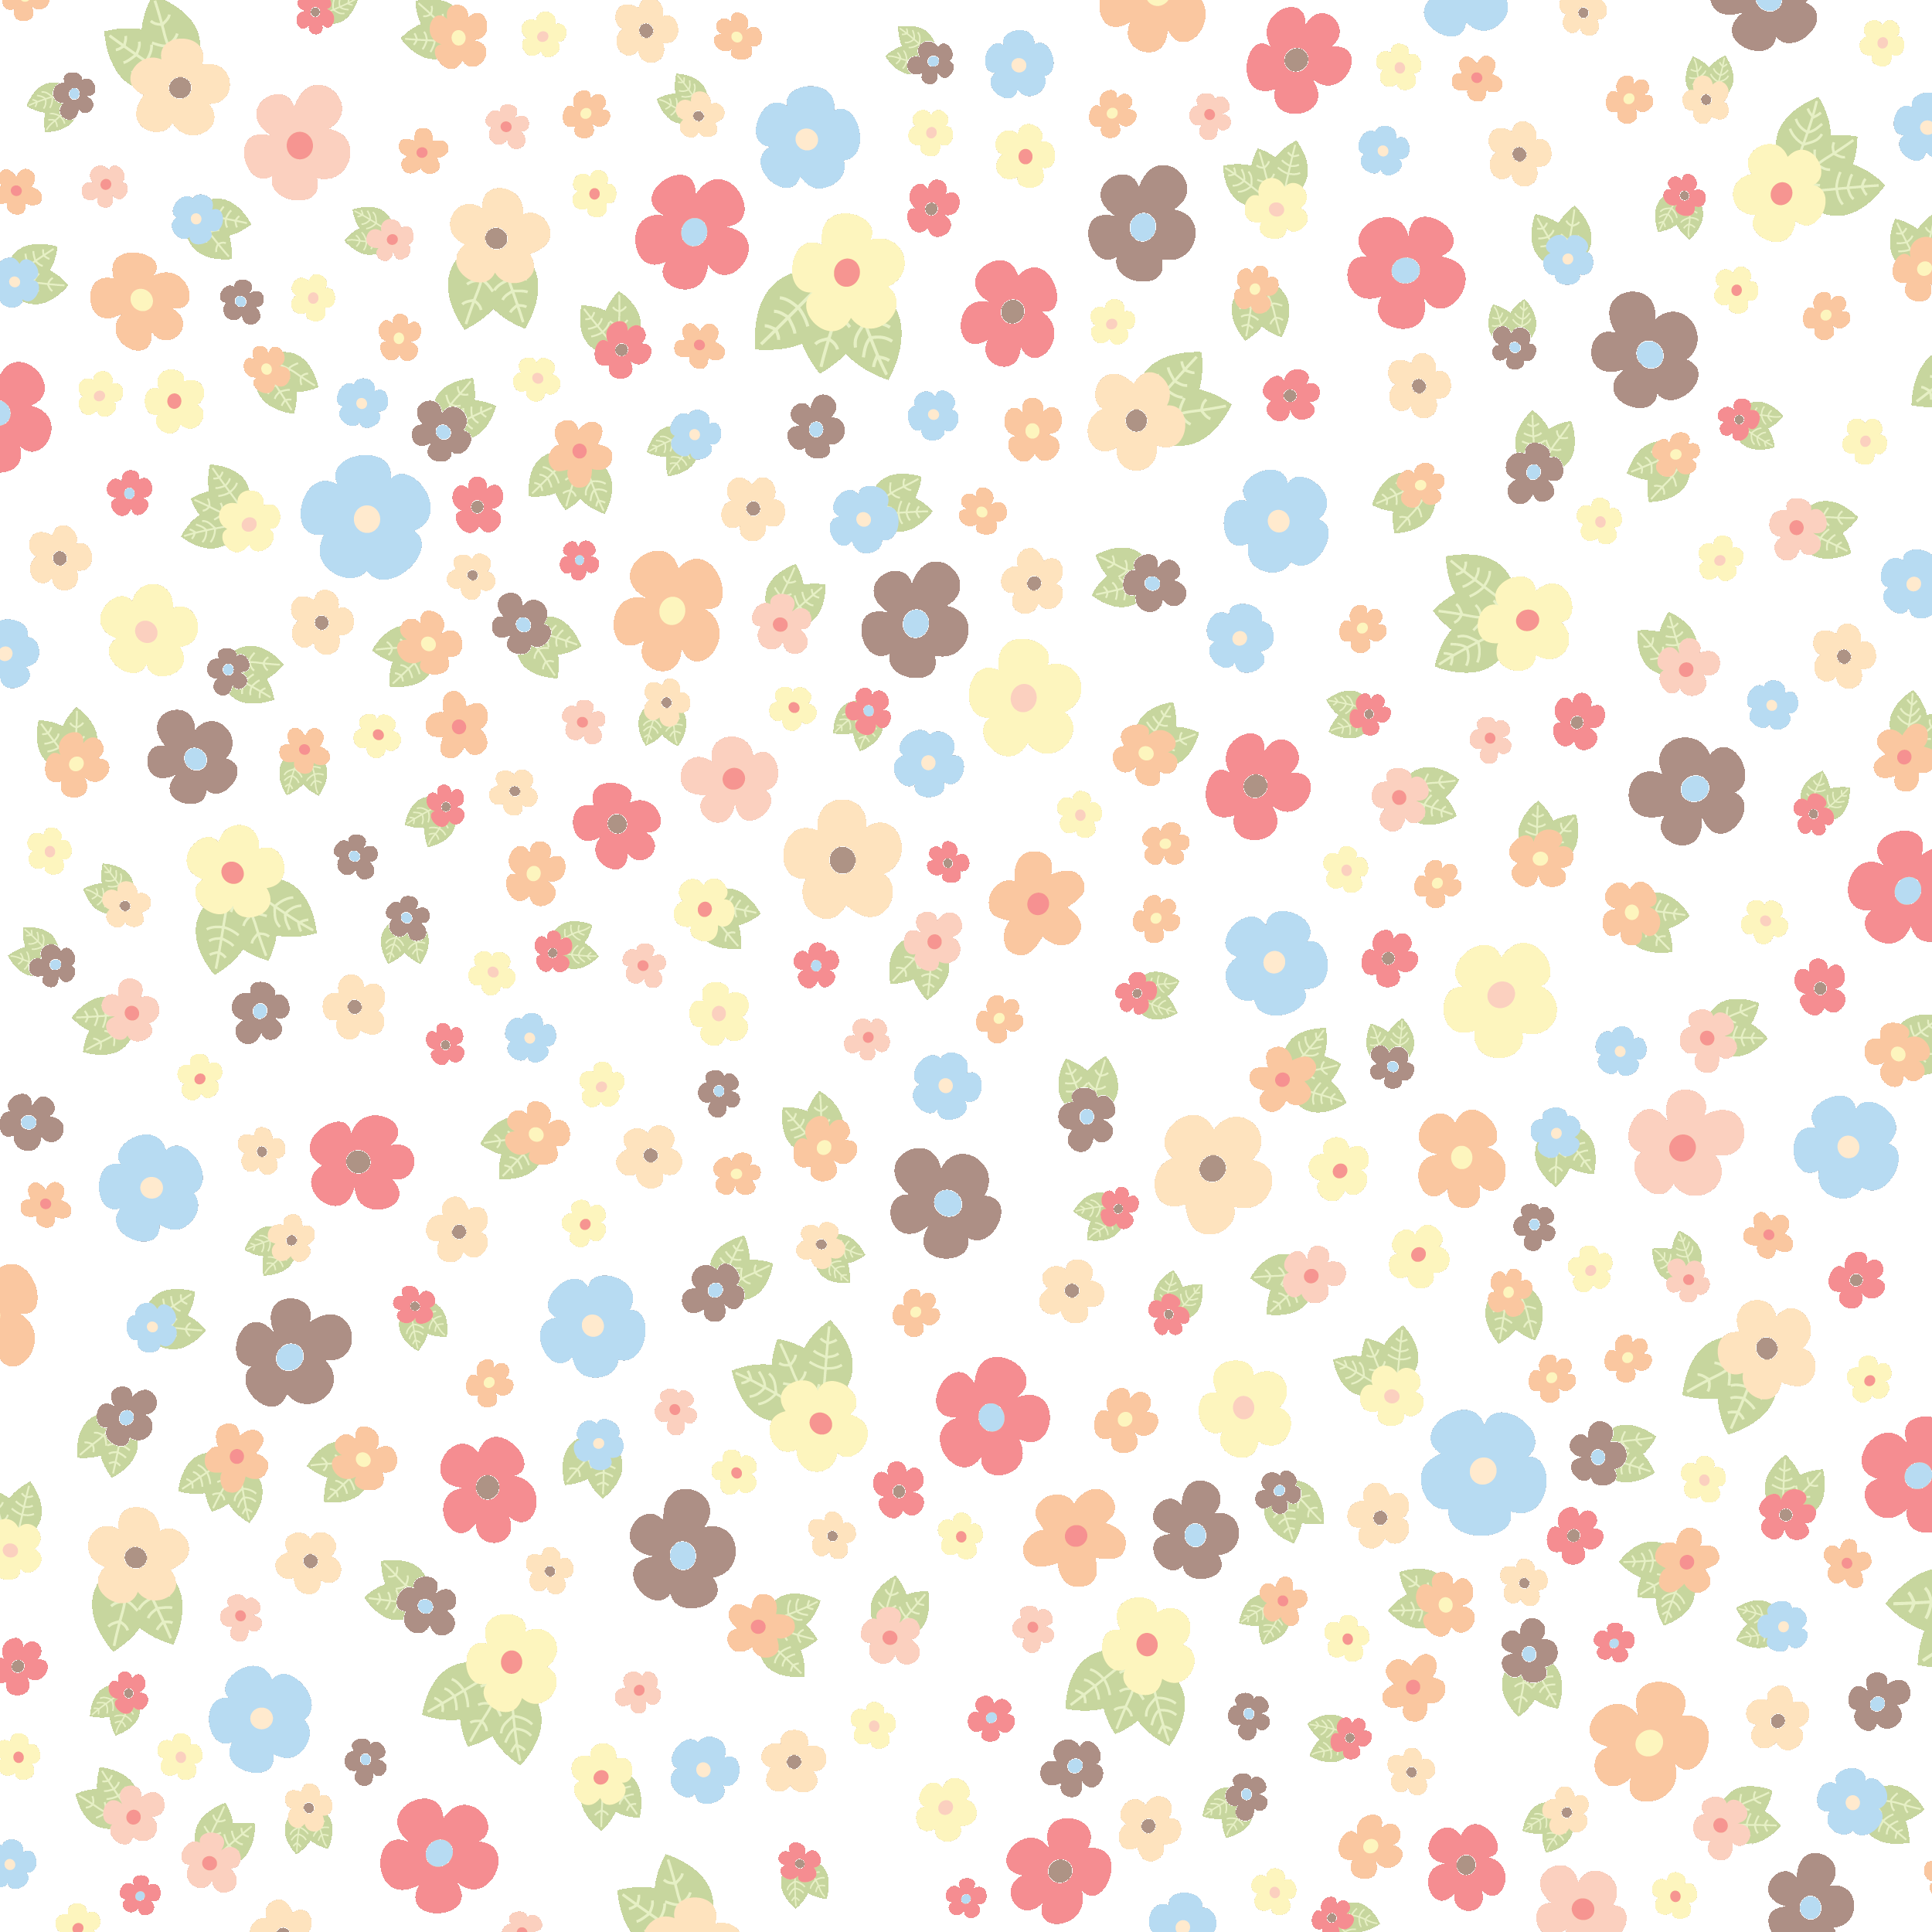 壁紙 背景イラスト 花の模様 柄 パターン No 079 カラフル 透明 薄目